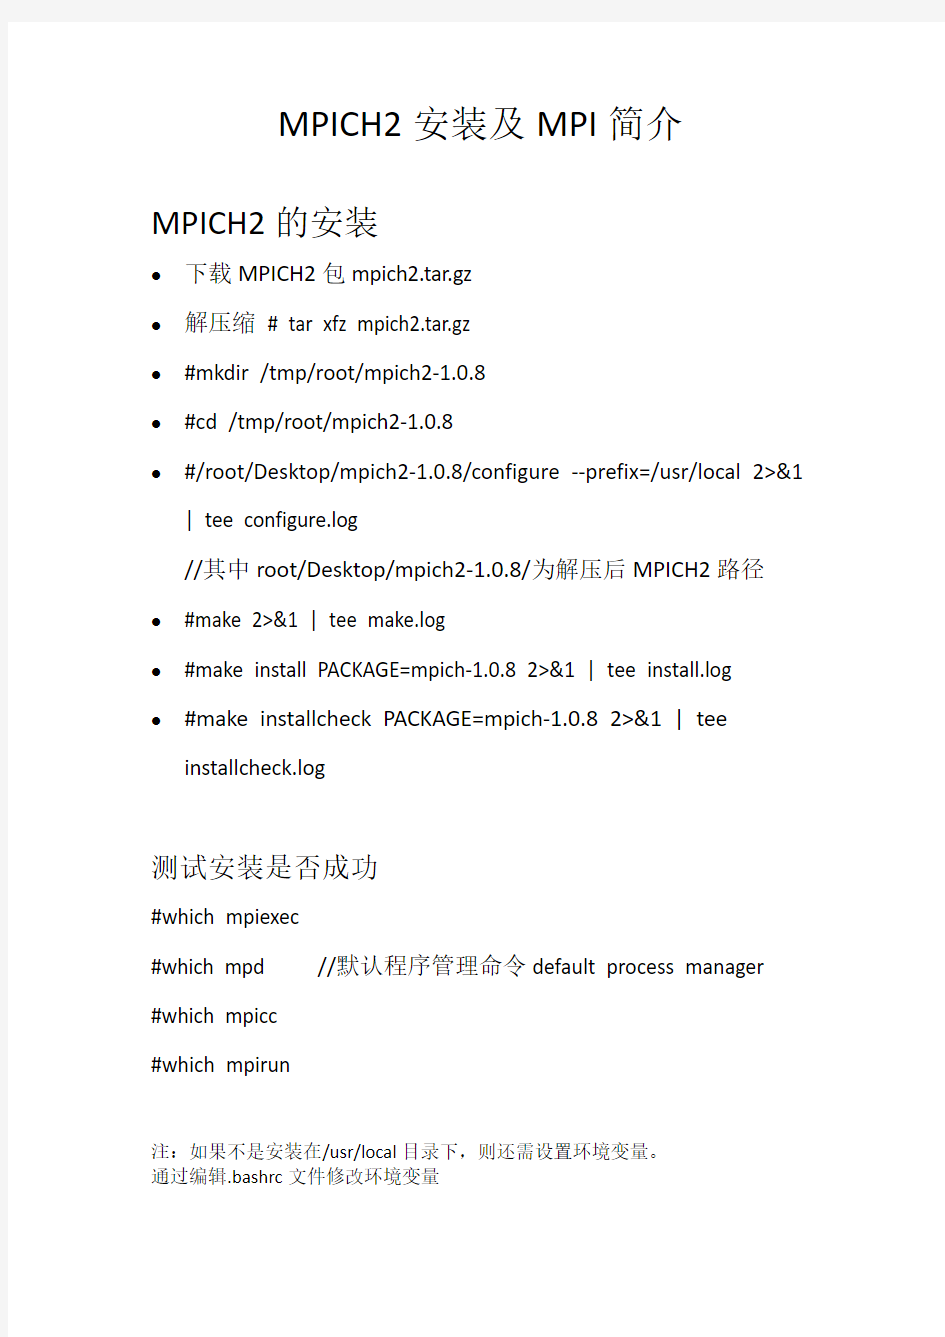 MPICH2安装及MPI简介